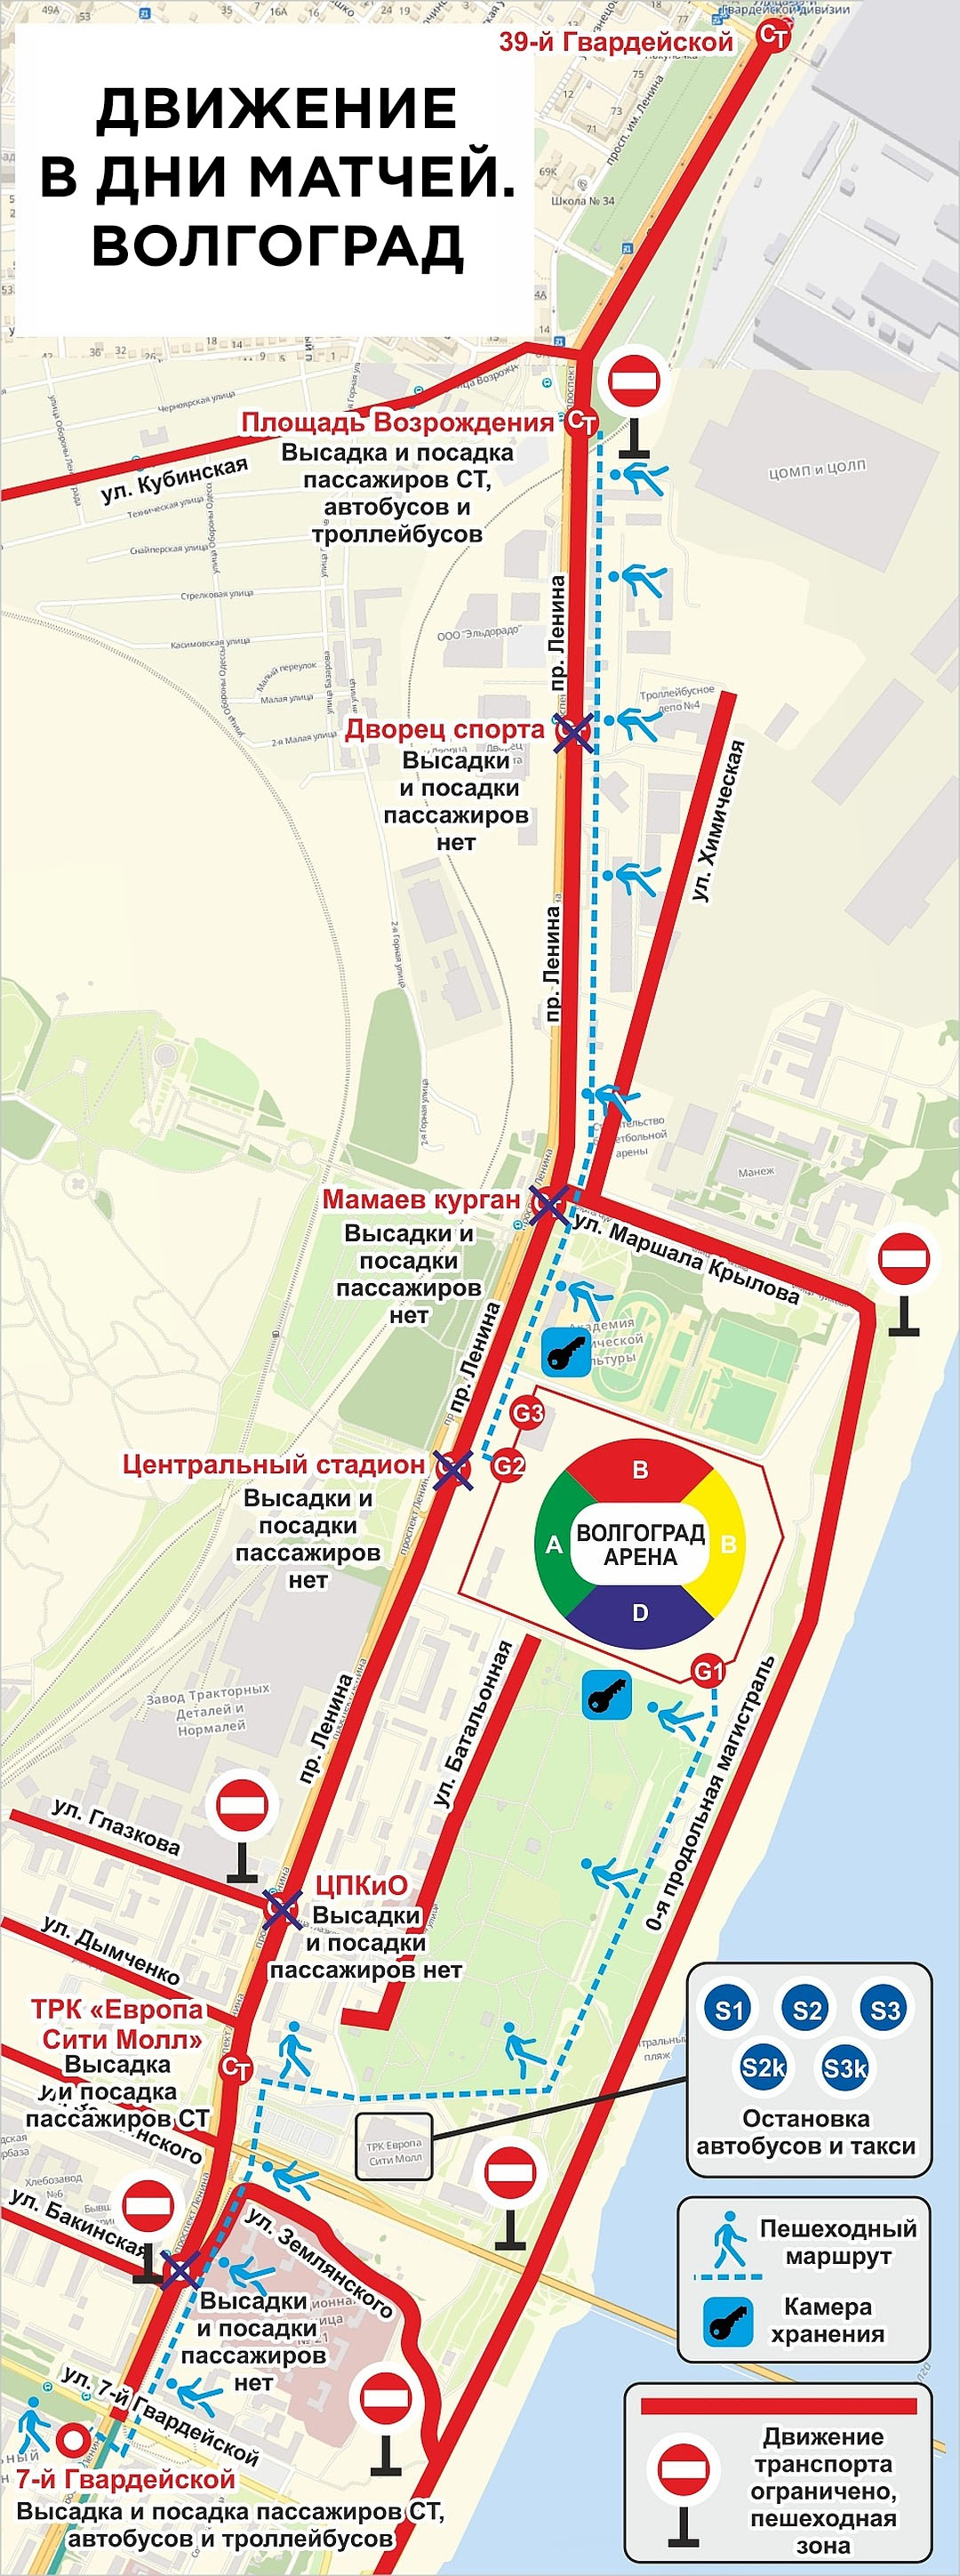 Схема движения транспорта в дни чемпионата в Волгограде